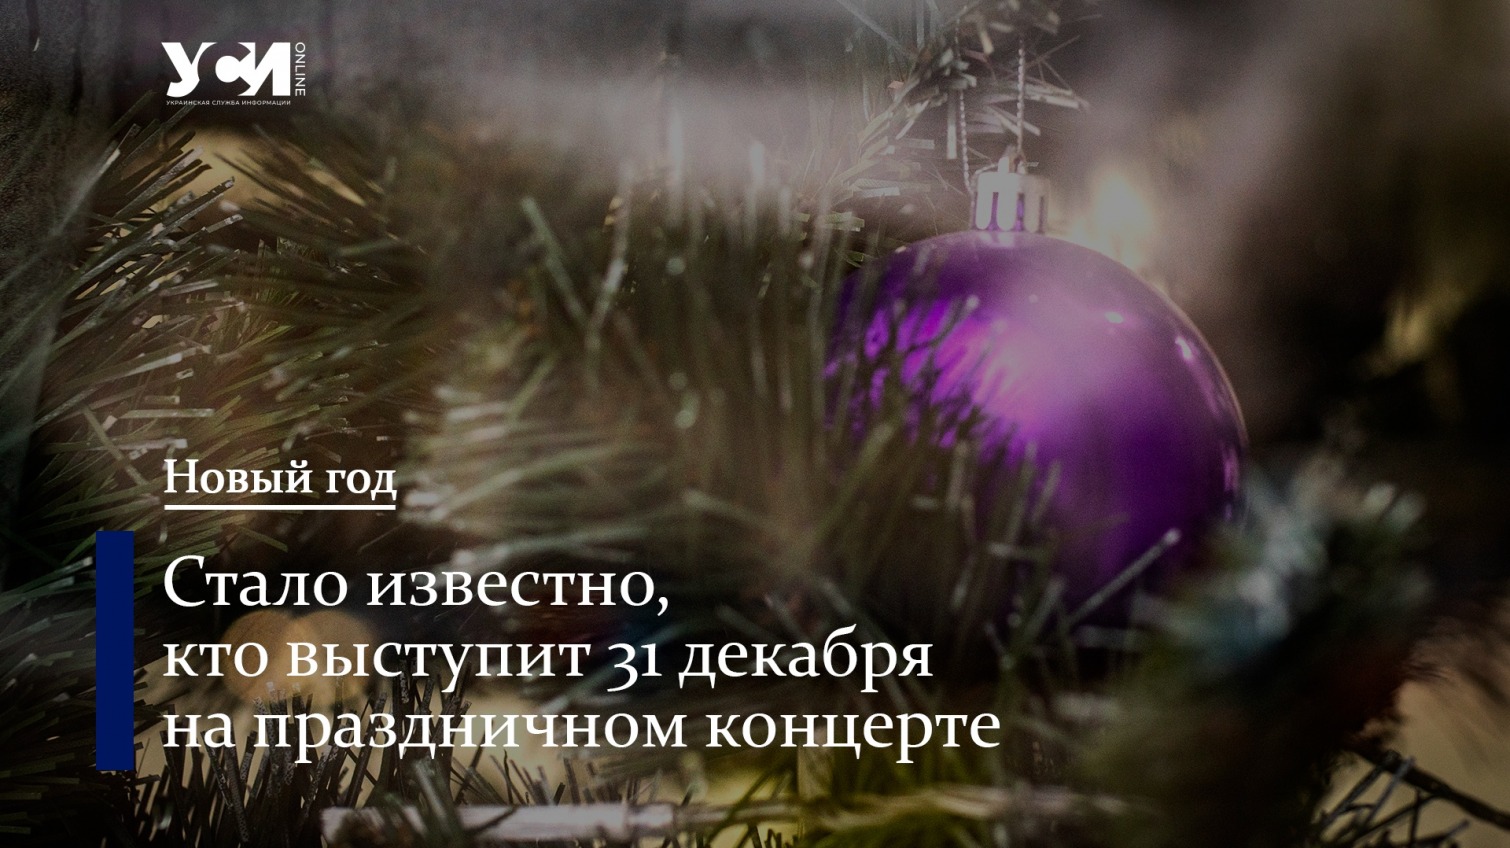 От оркестра до группы “ТИК”: как Одесса отметит Новый год «фото»